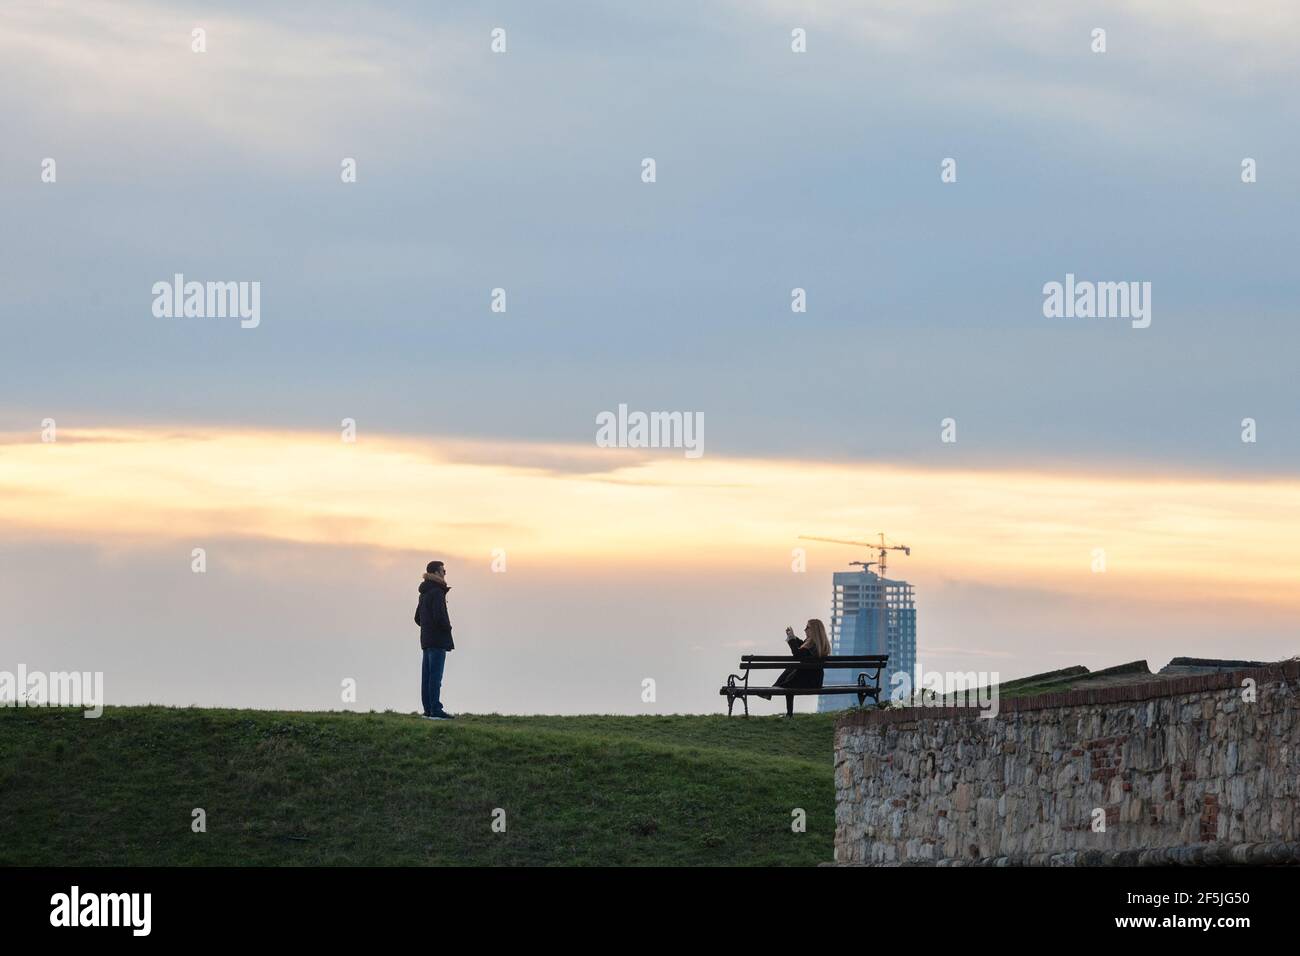 BELGRADE, SERBIE - 1er JANVIER 2021 : couple, amoureux, touristes prenant des photos et posant dans le parc de la forteresse de Kalemegdan avec un panorama de la skystra Banque D'Images